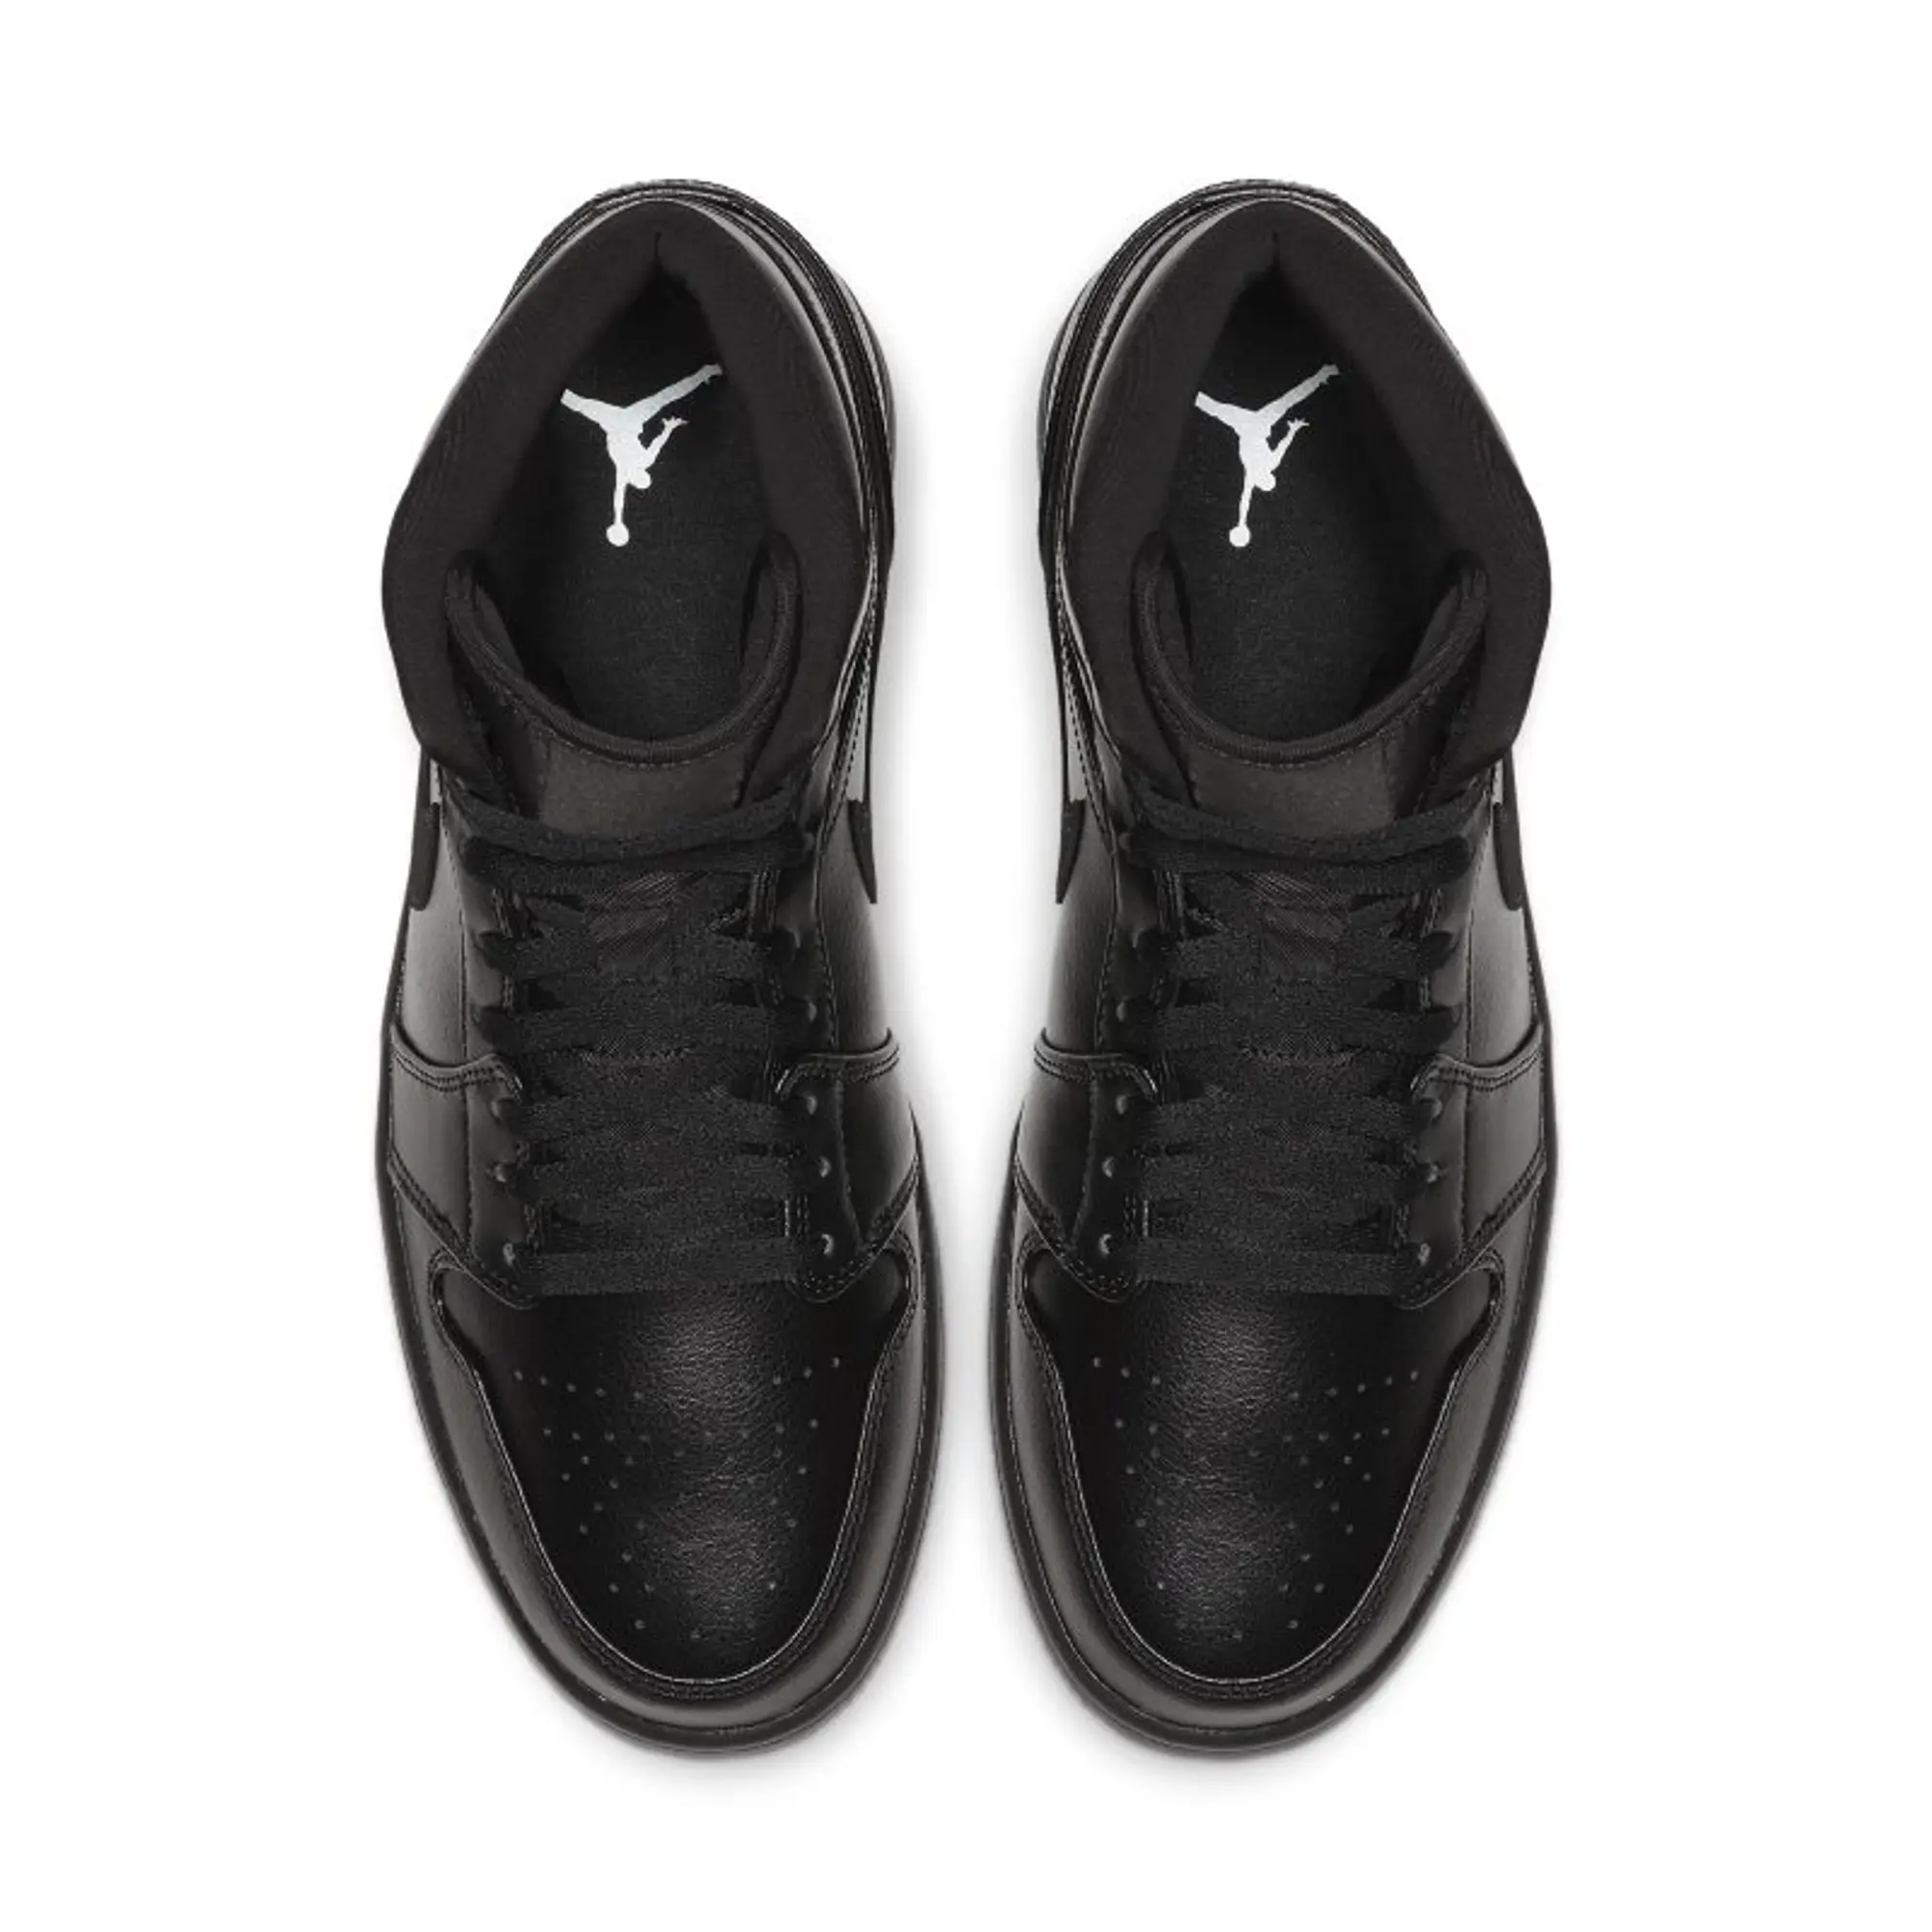 Nike Jordan Air Jordan 1 Mid Black